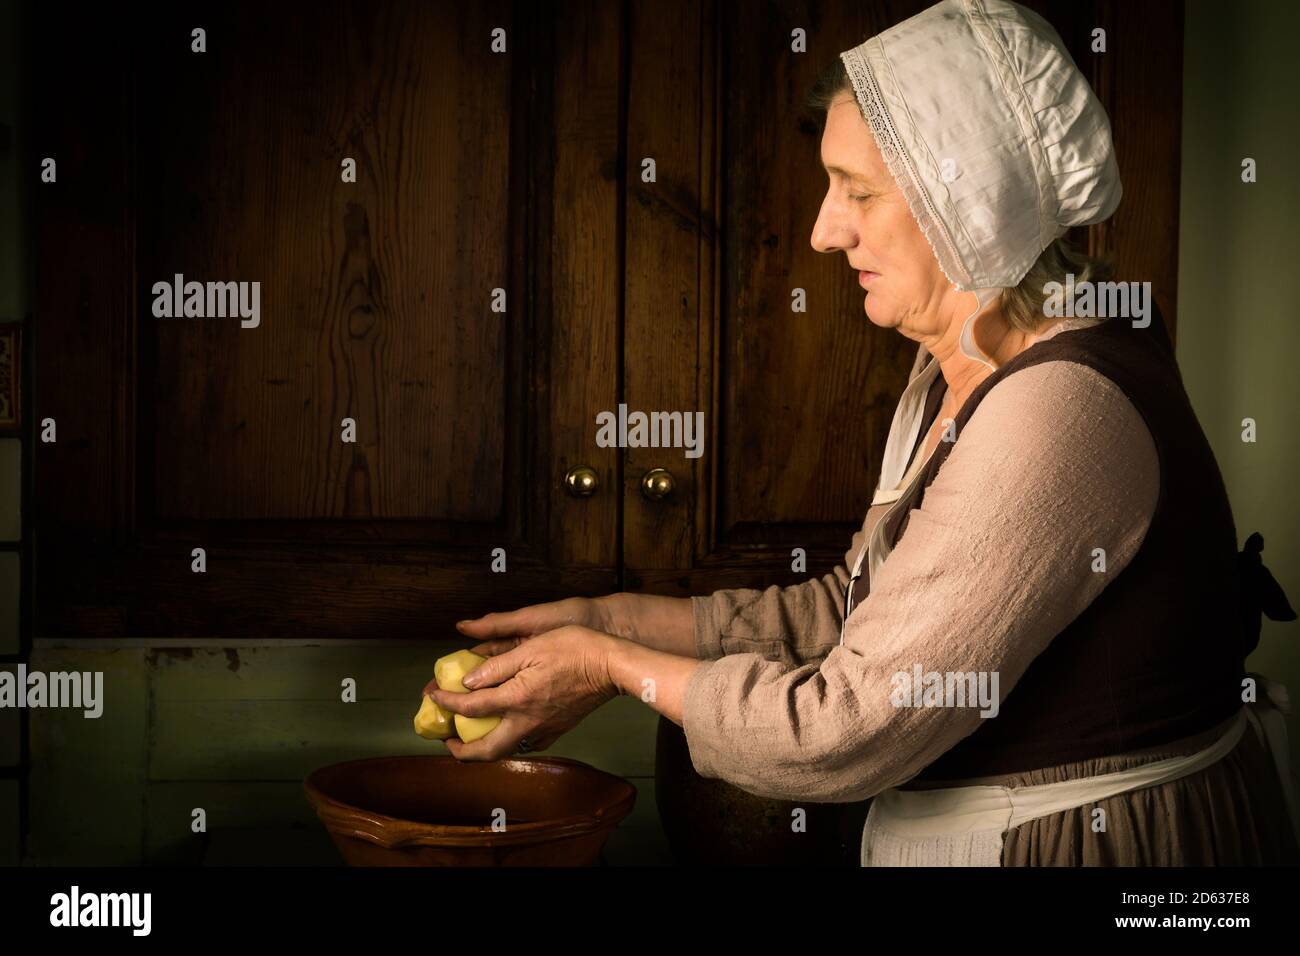 Style ancien Renaissance portrait d'une femme la préparation des aliments dans une ancienne cuisine Banque D'Images